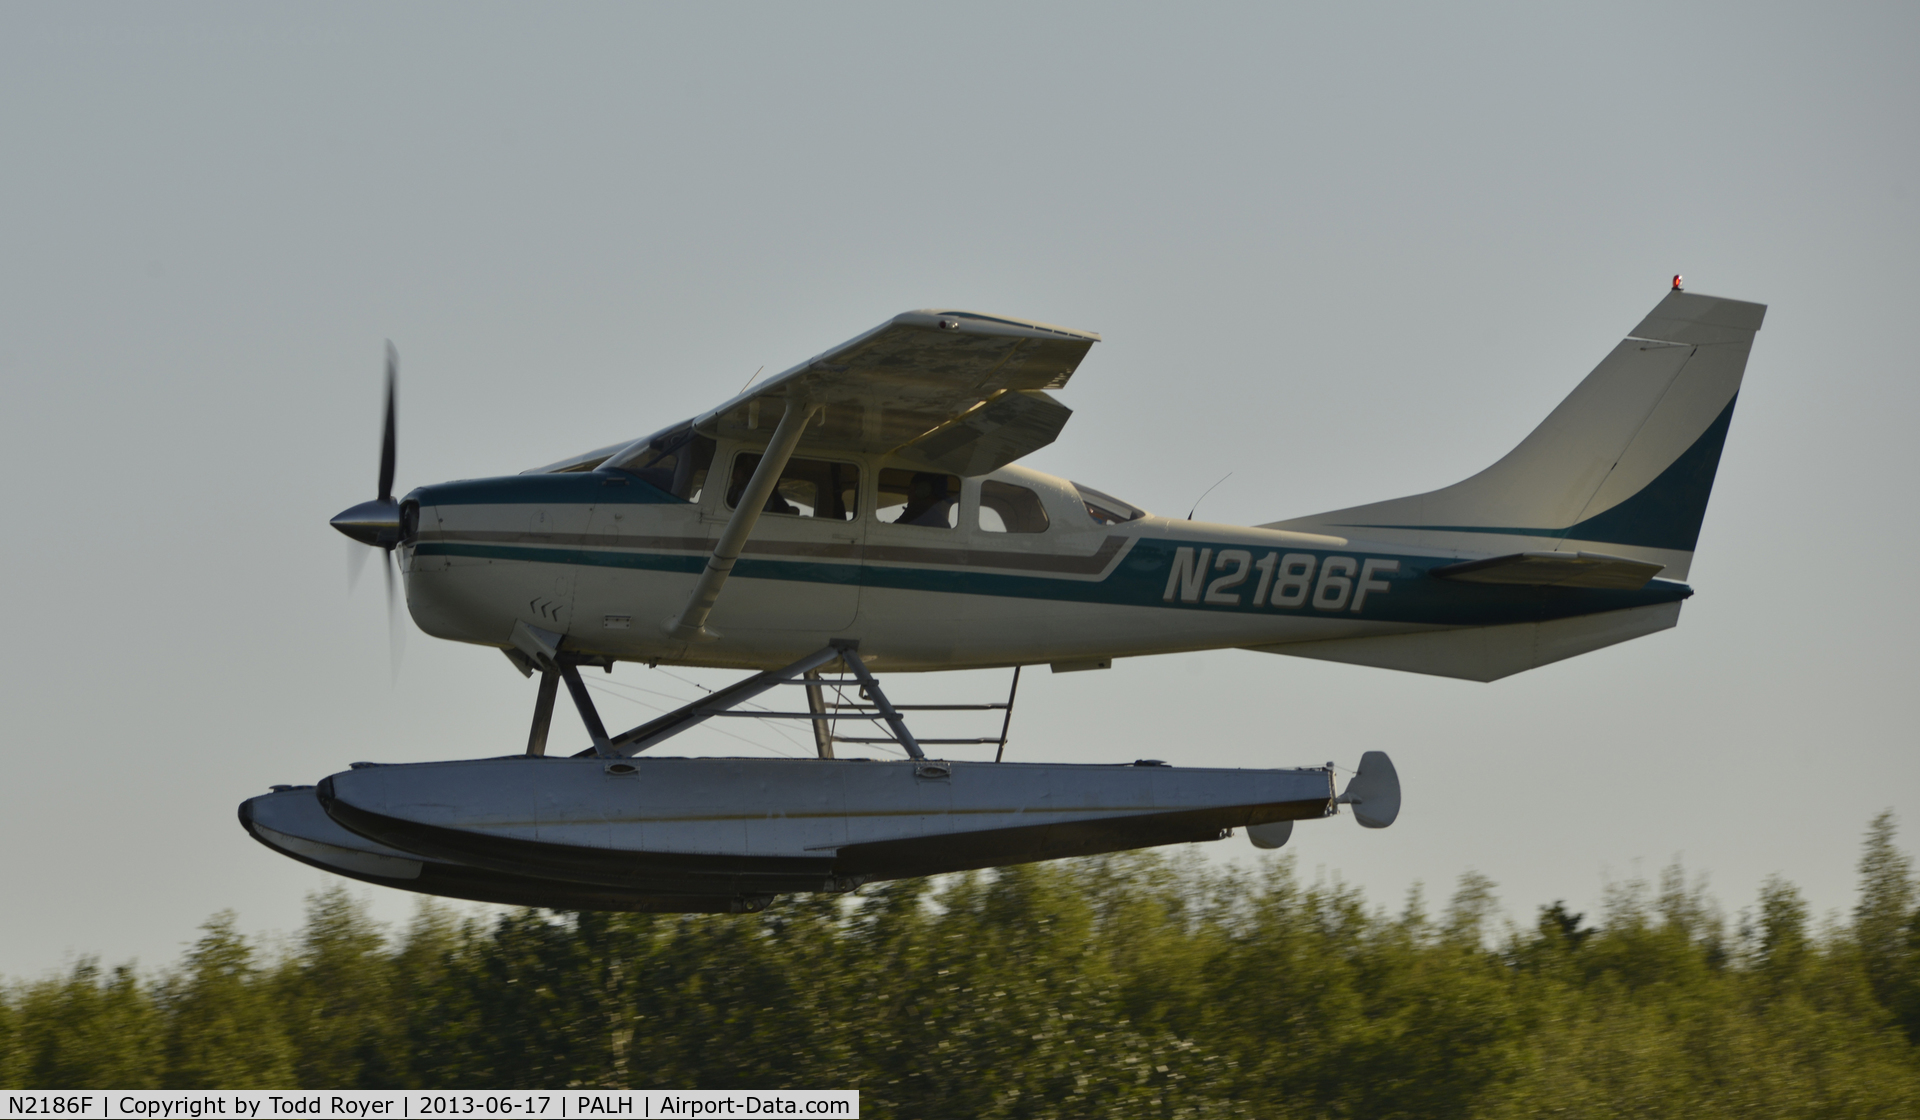 N2186F, 1965 Cessna U206 Super Skywagon C/N U206-0386, Deoarting Lake Hood